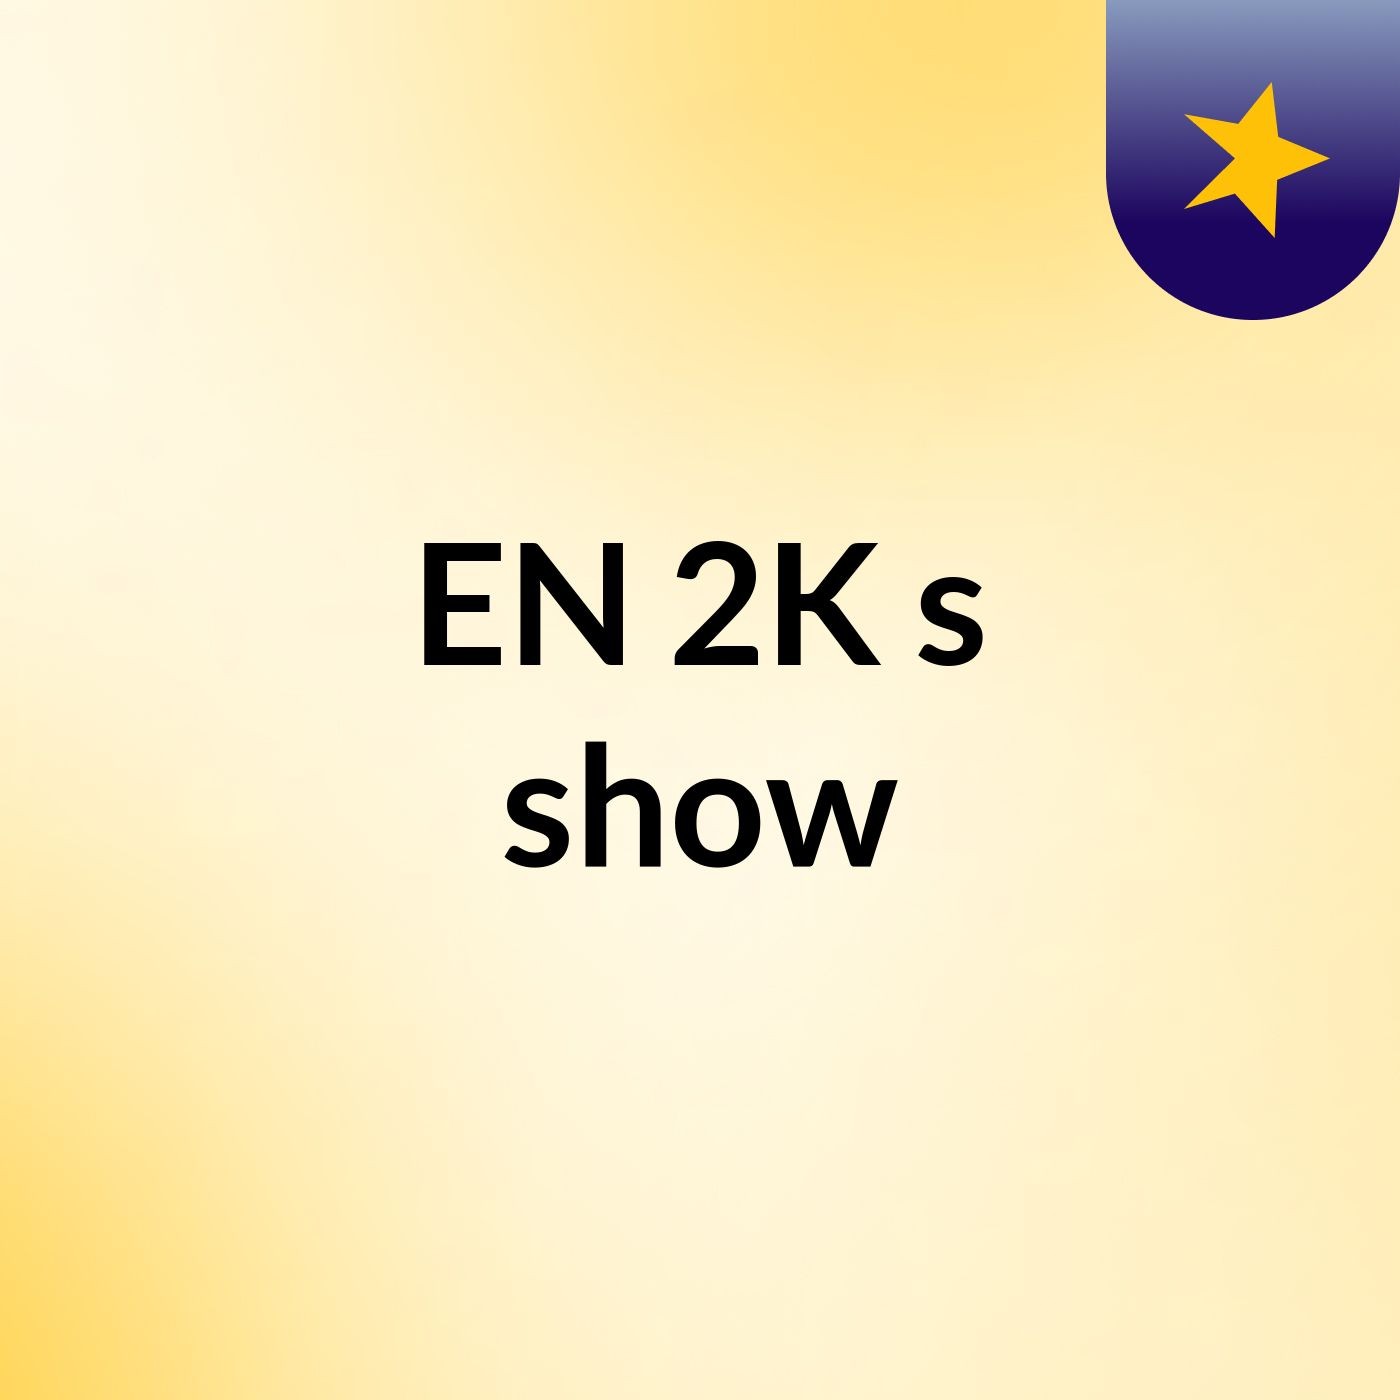 EN 2K's show